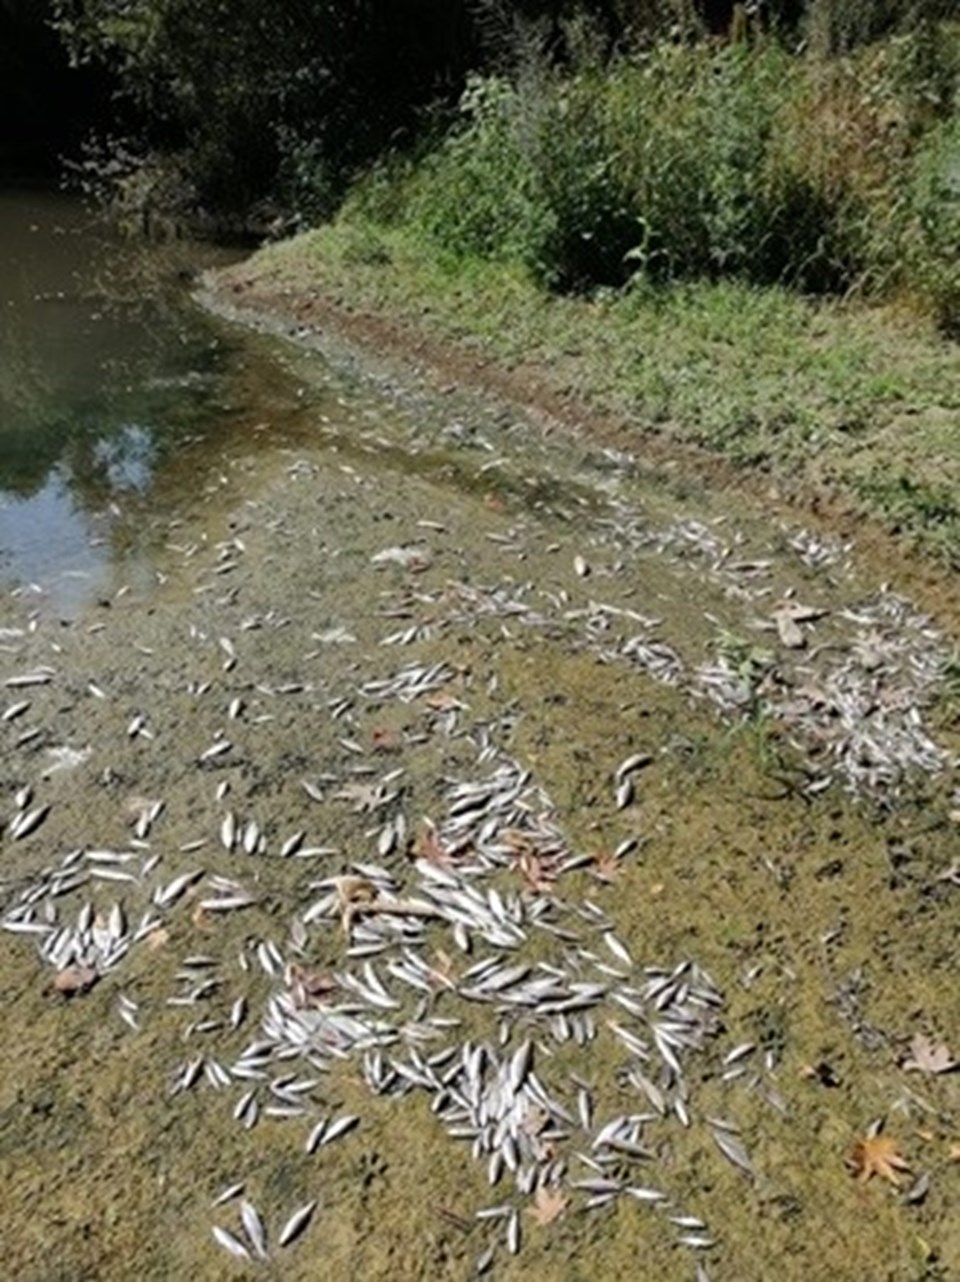 Bartın Irmağı'ndaki balık ölümlerinin nedeni belli oldu - 1